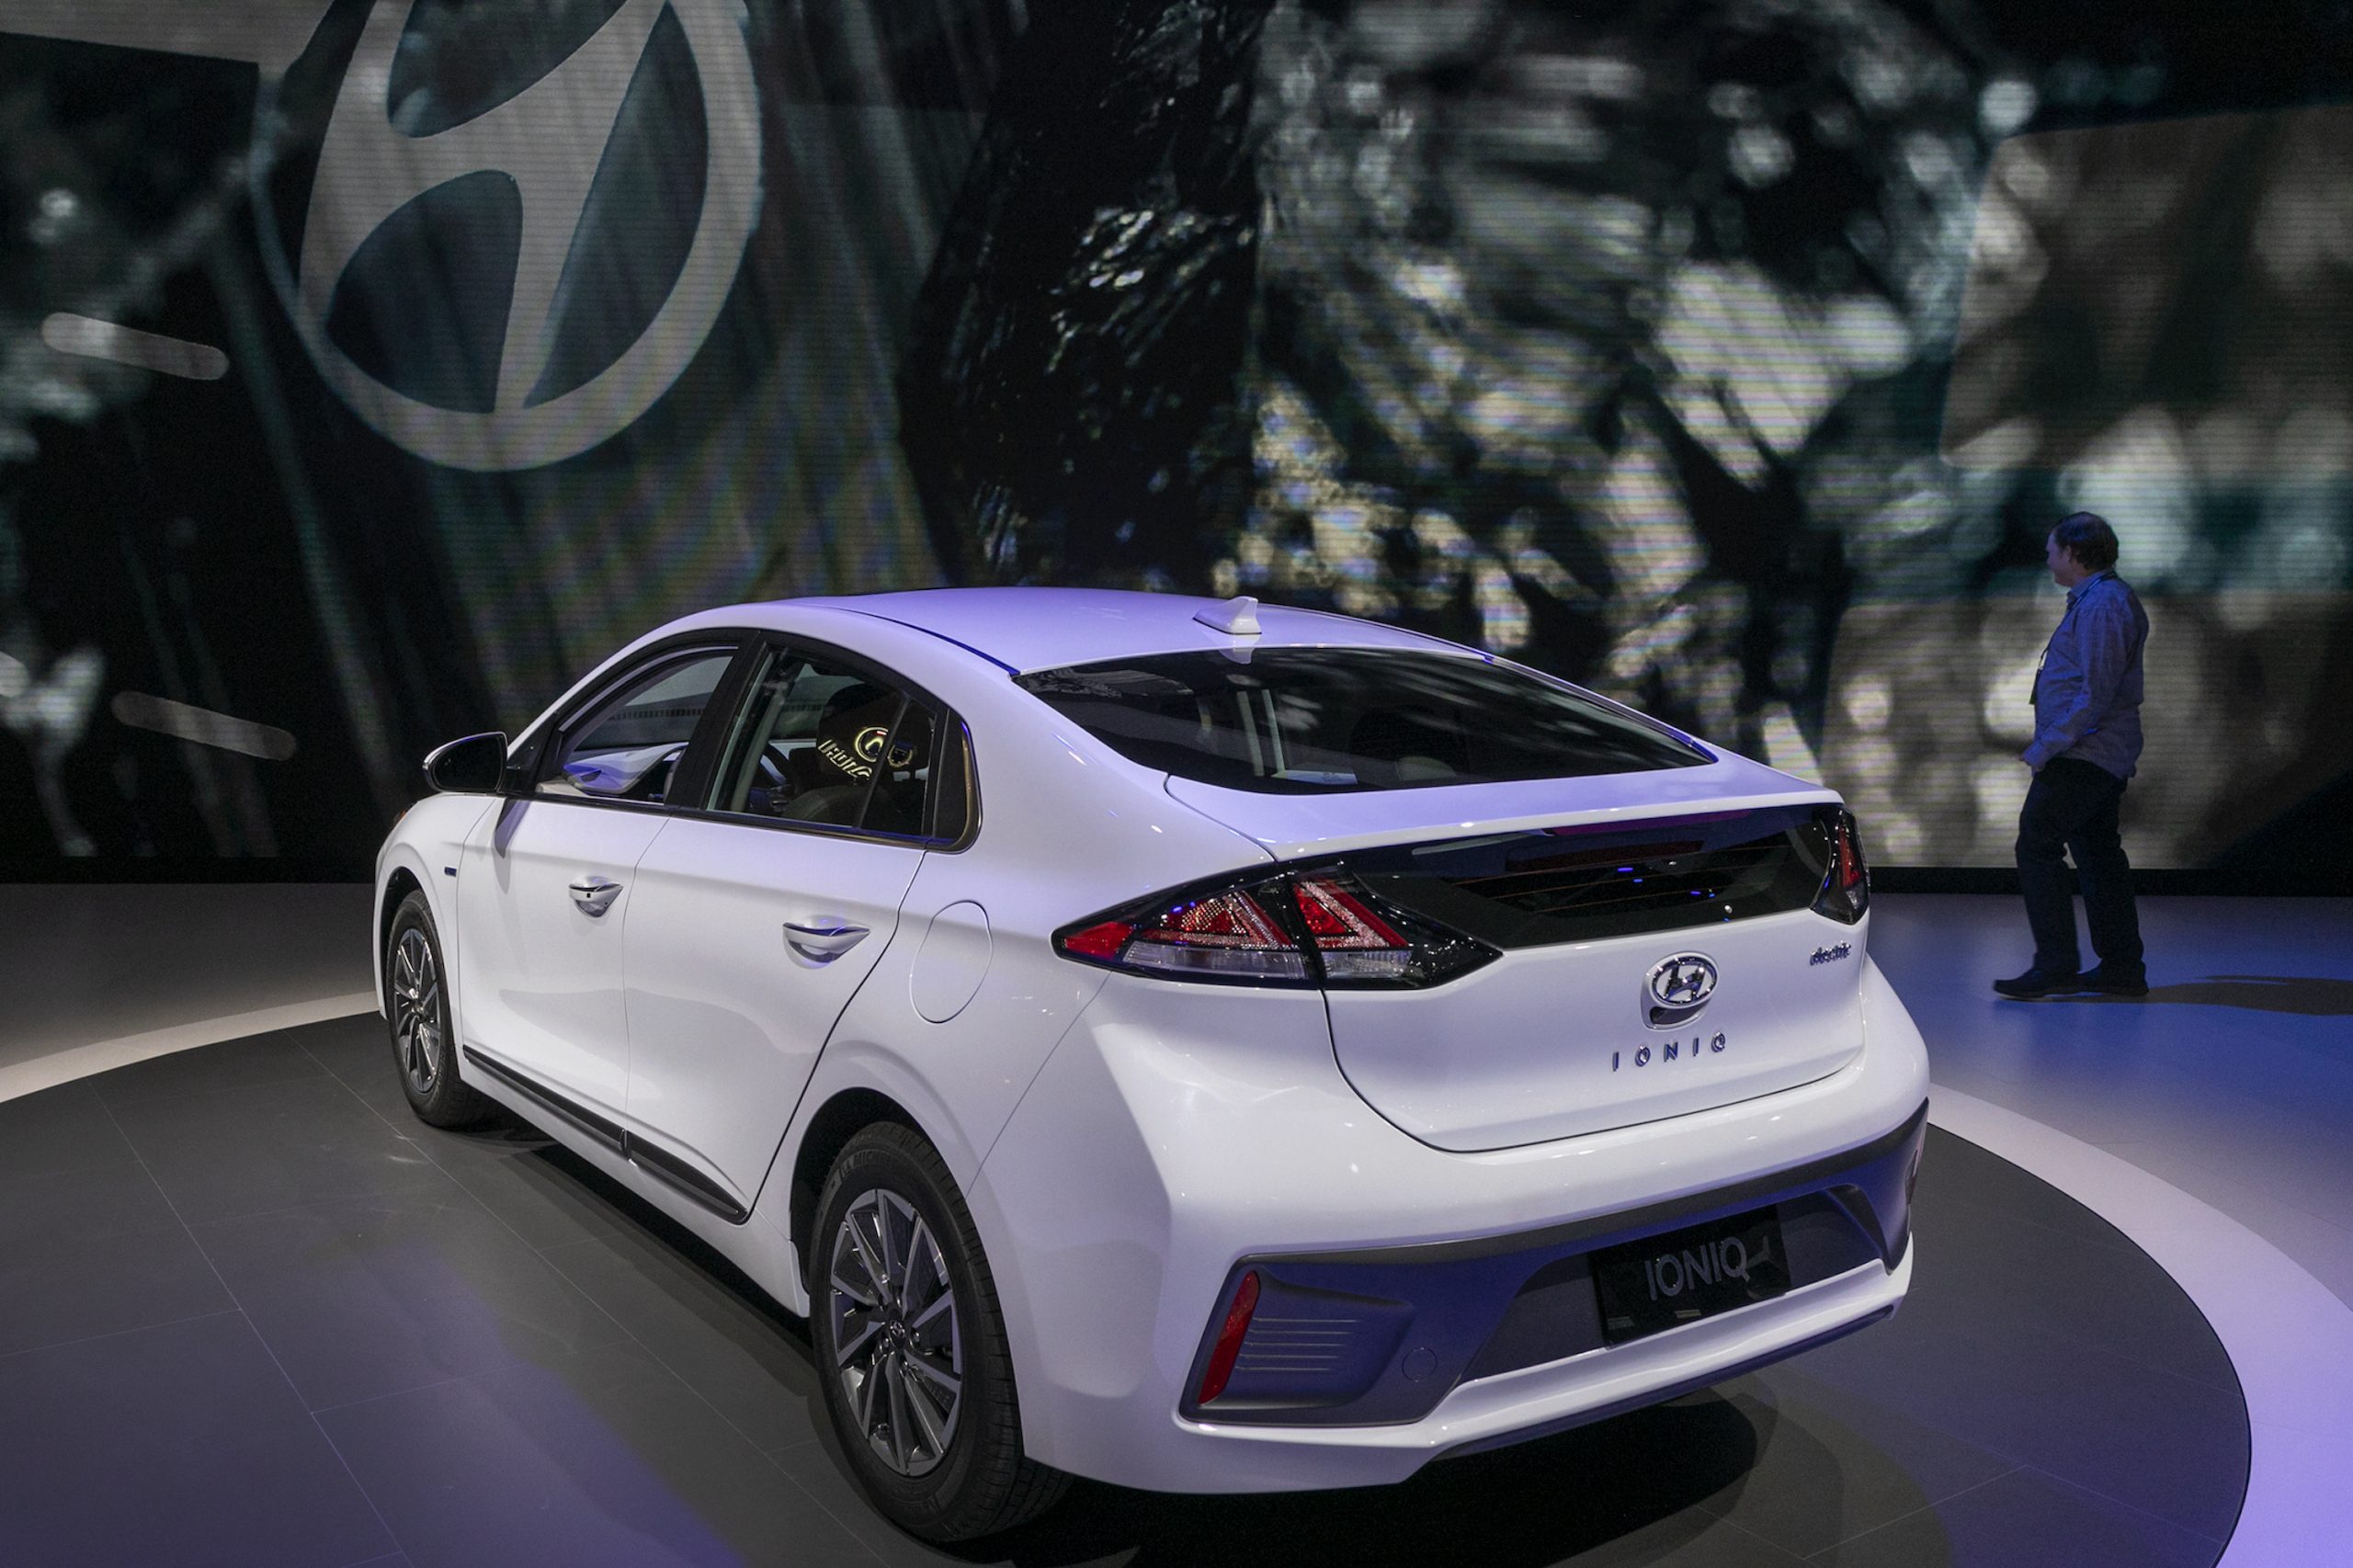 The rear of the white Hyundai Ioniq is shown at AutoMobility LA